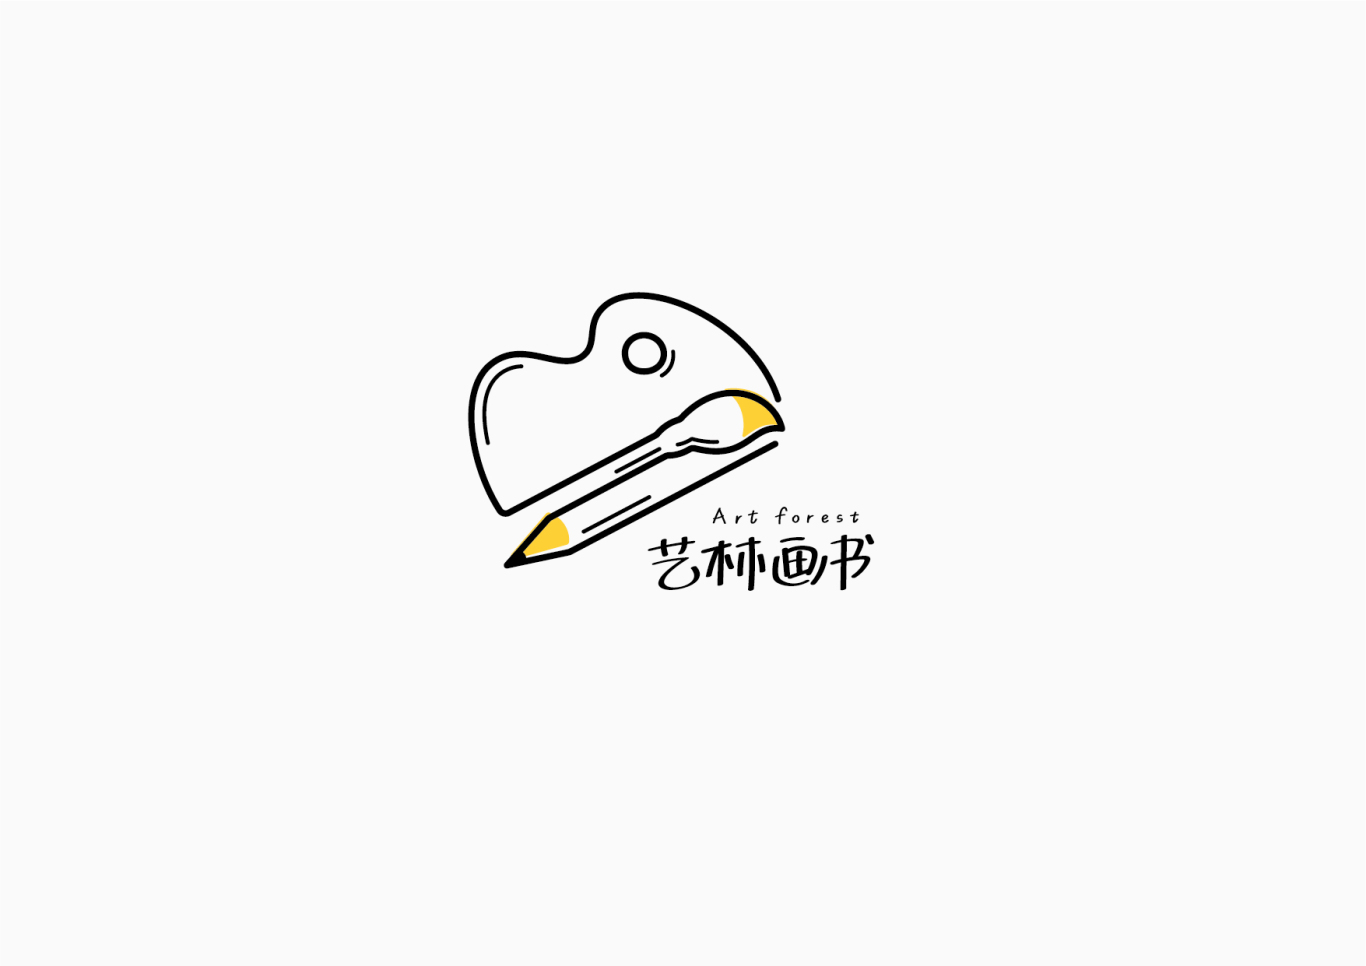 藝林書畫logo設計圖7